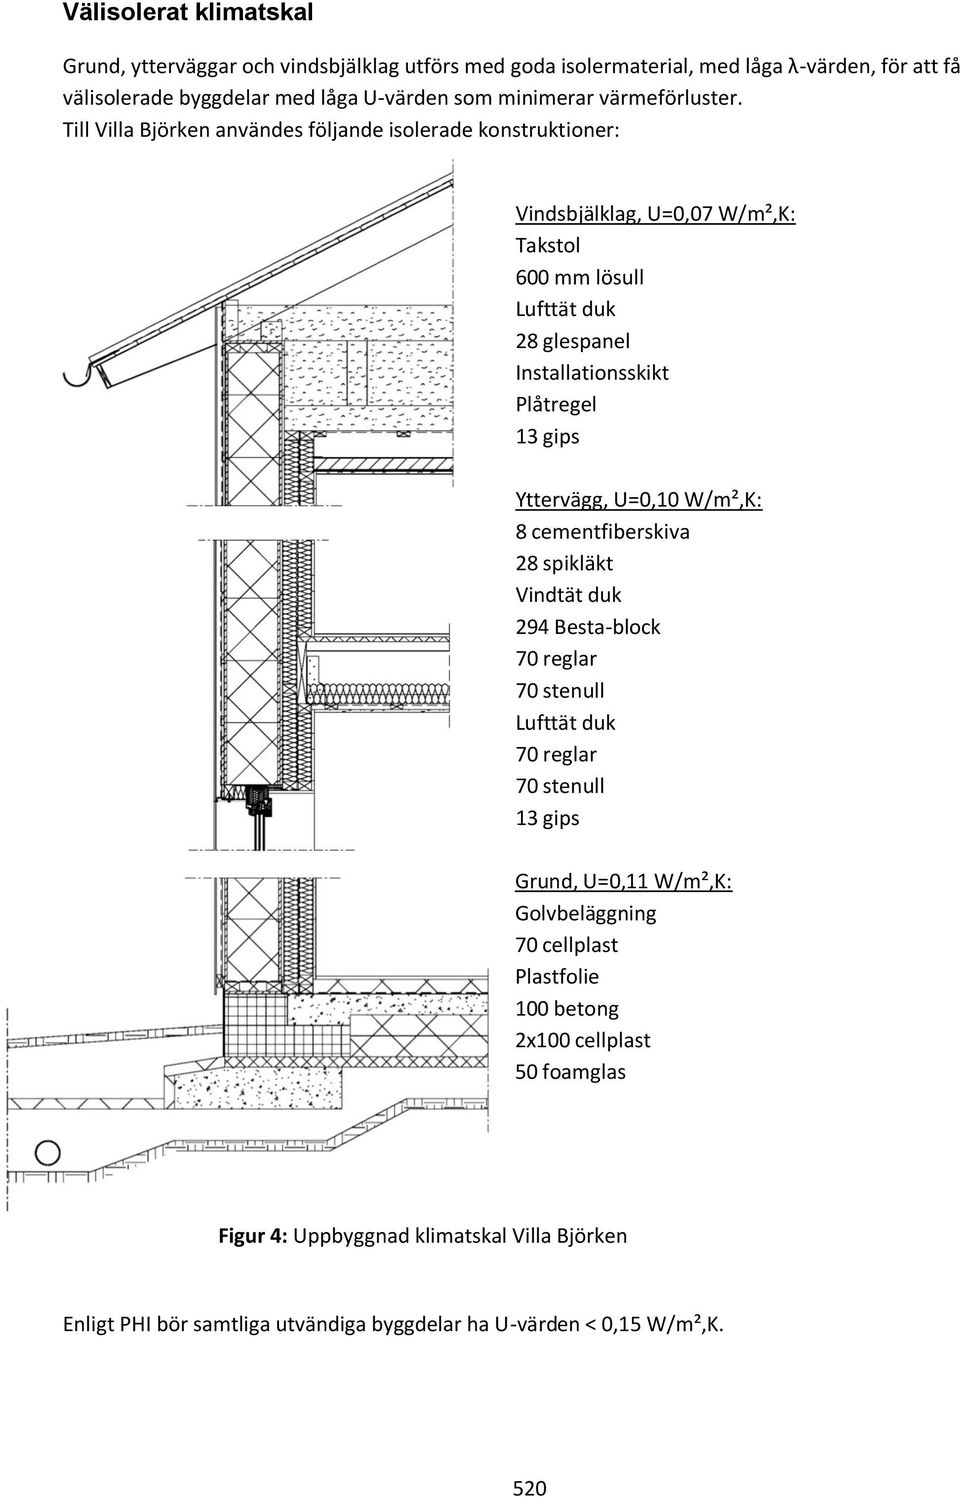 Till Villa Björken användes följande isolerade konstruktioner: Vindsbjälklag, U=0,07 W/m²,K: Takstol 600 mm lösull Lufttät duk 28 glespanel Installationsskikt Plåtregel 13 gips